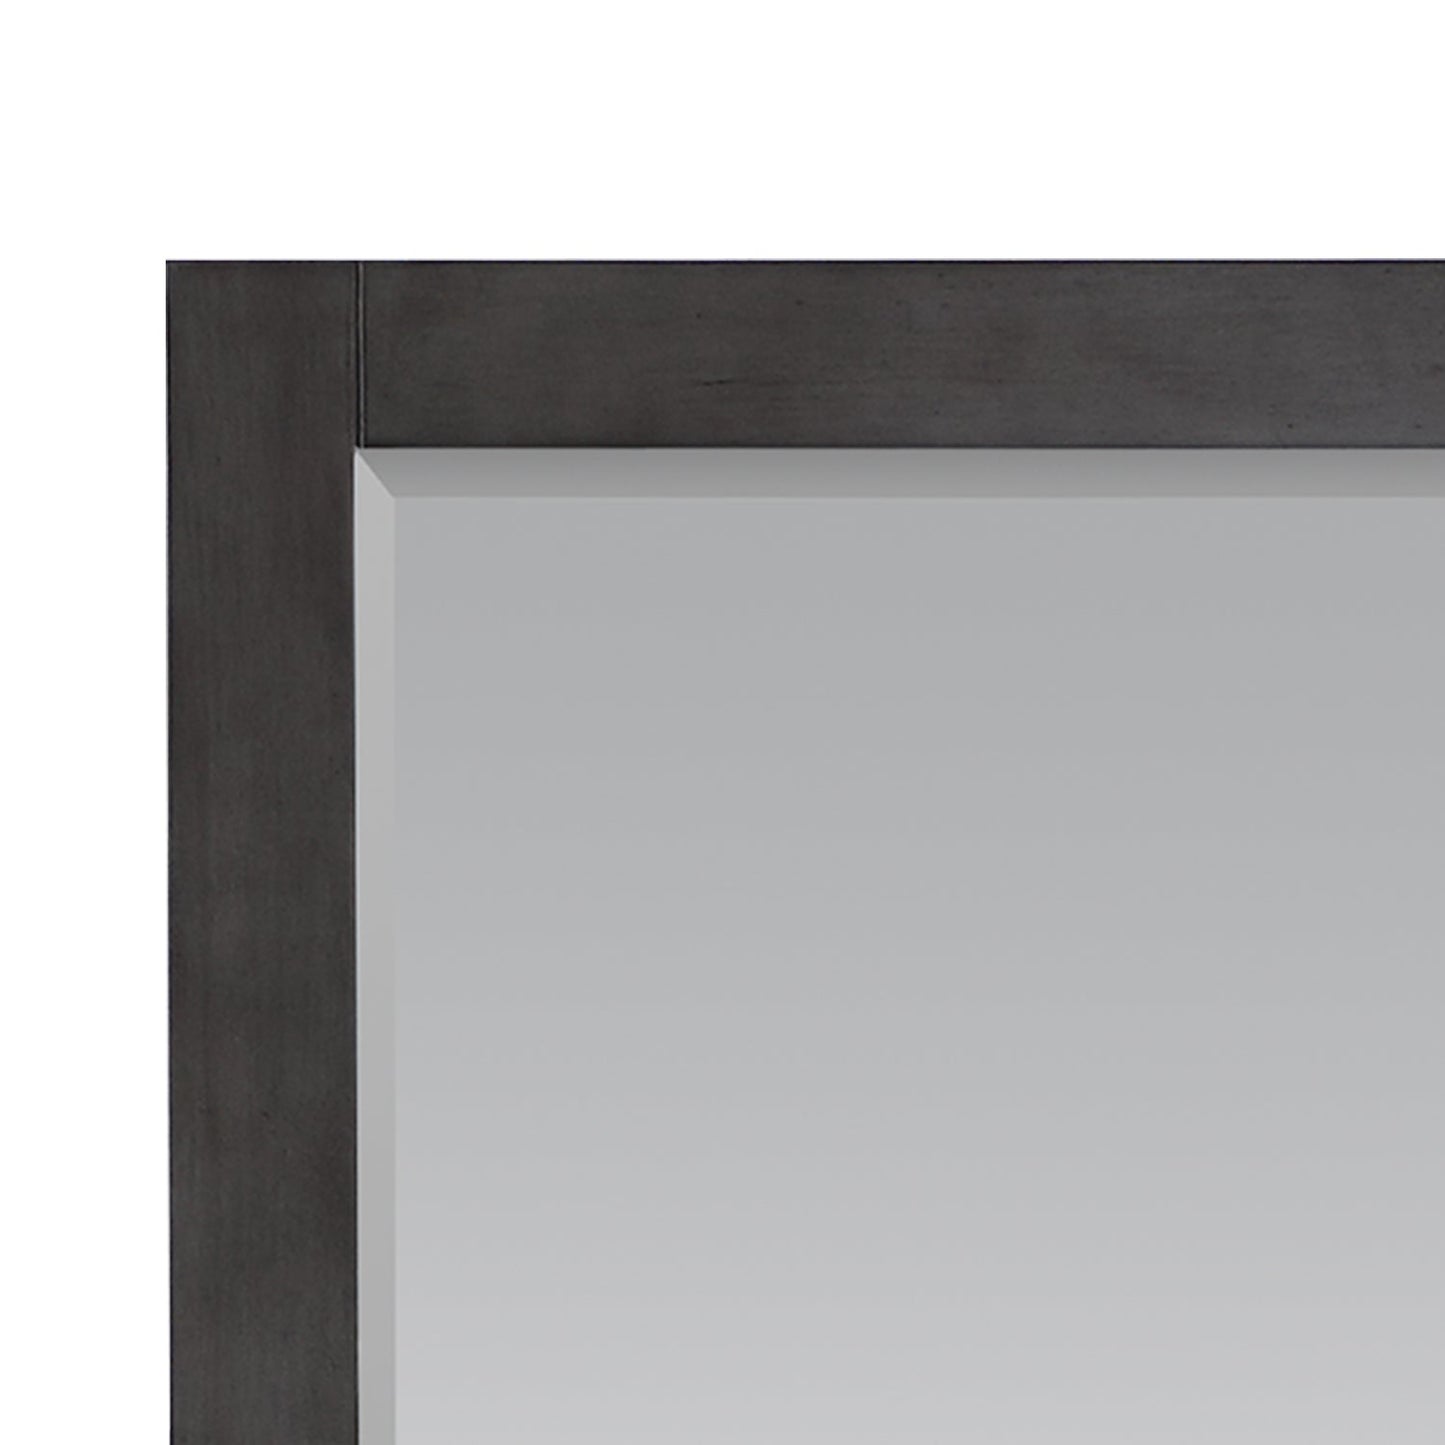 Maribella 34" Rectangular Bathroom Wood Framed Wall Mirror in Rust Black